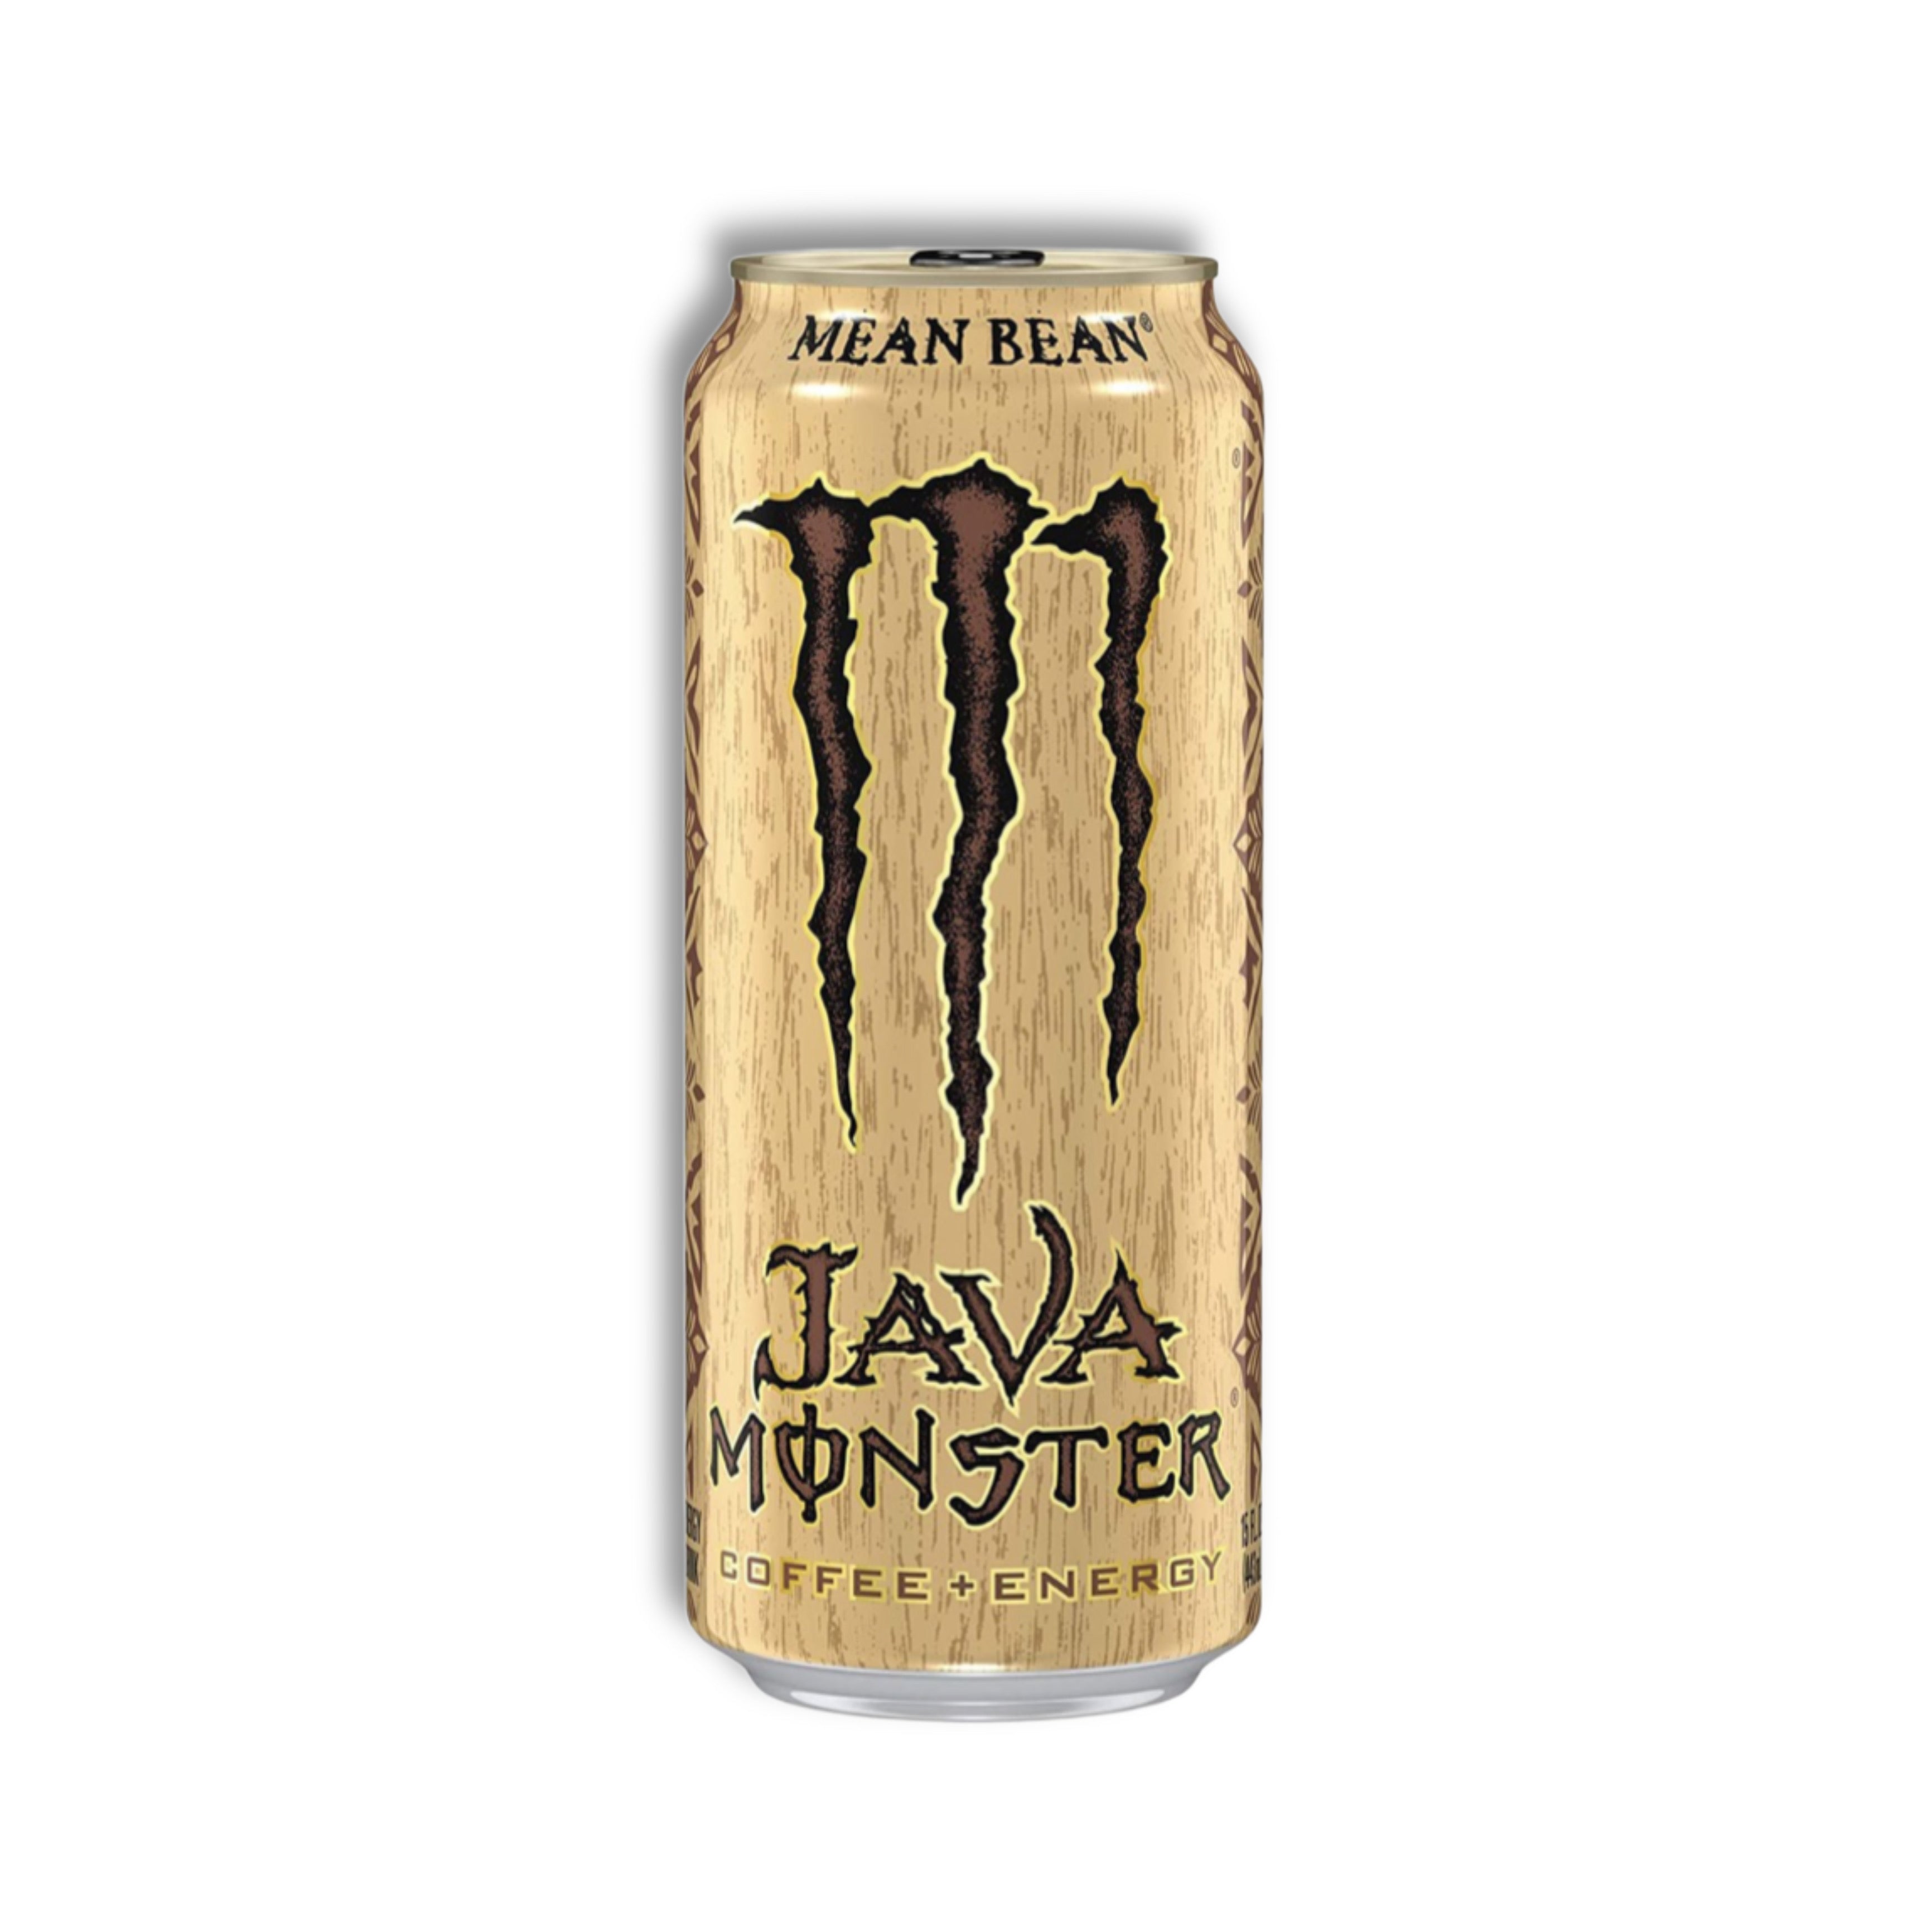 Monster Java - Mean Bean